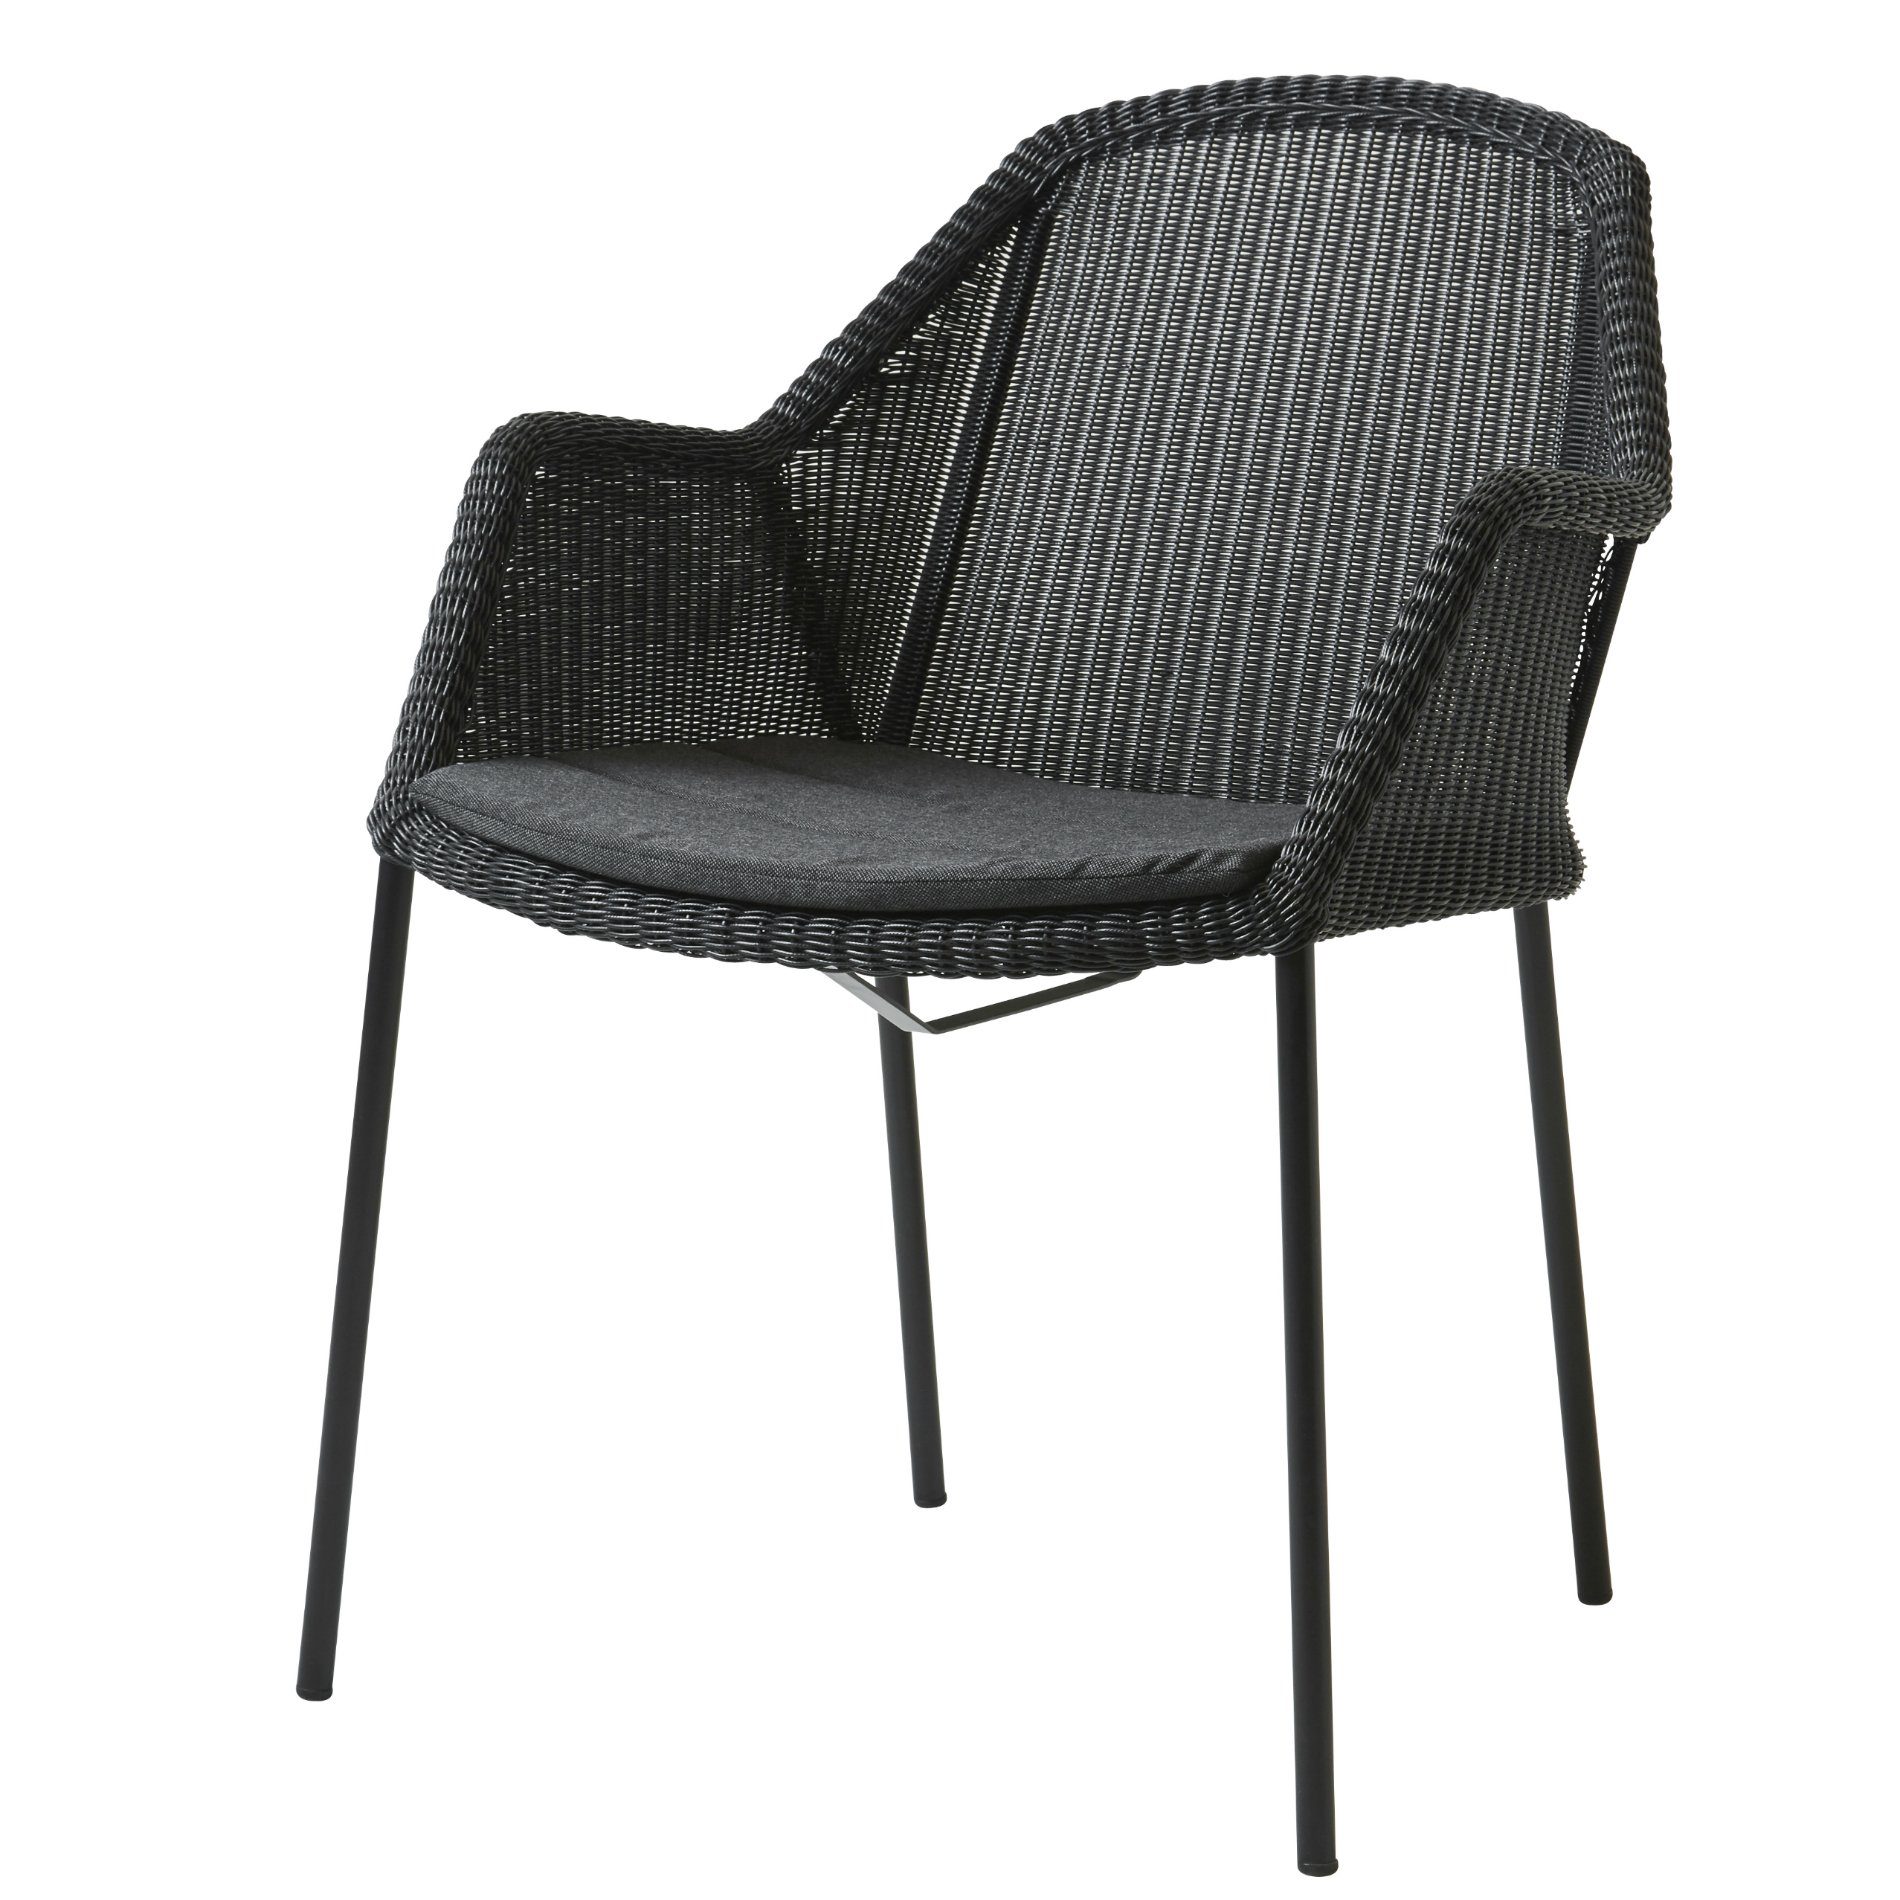 Stapelstuhl "Breeze", schwarz, von Cane-line mit Sitzkissen schwarz